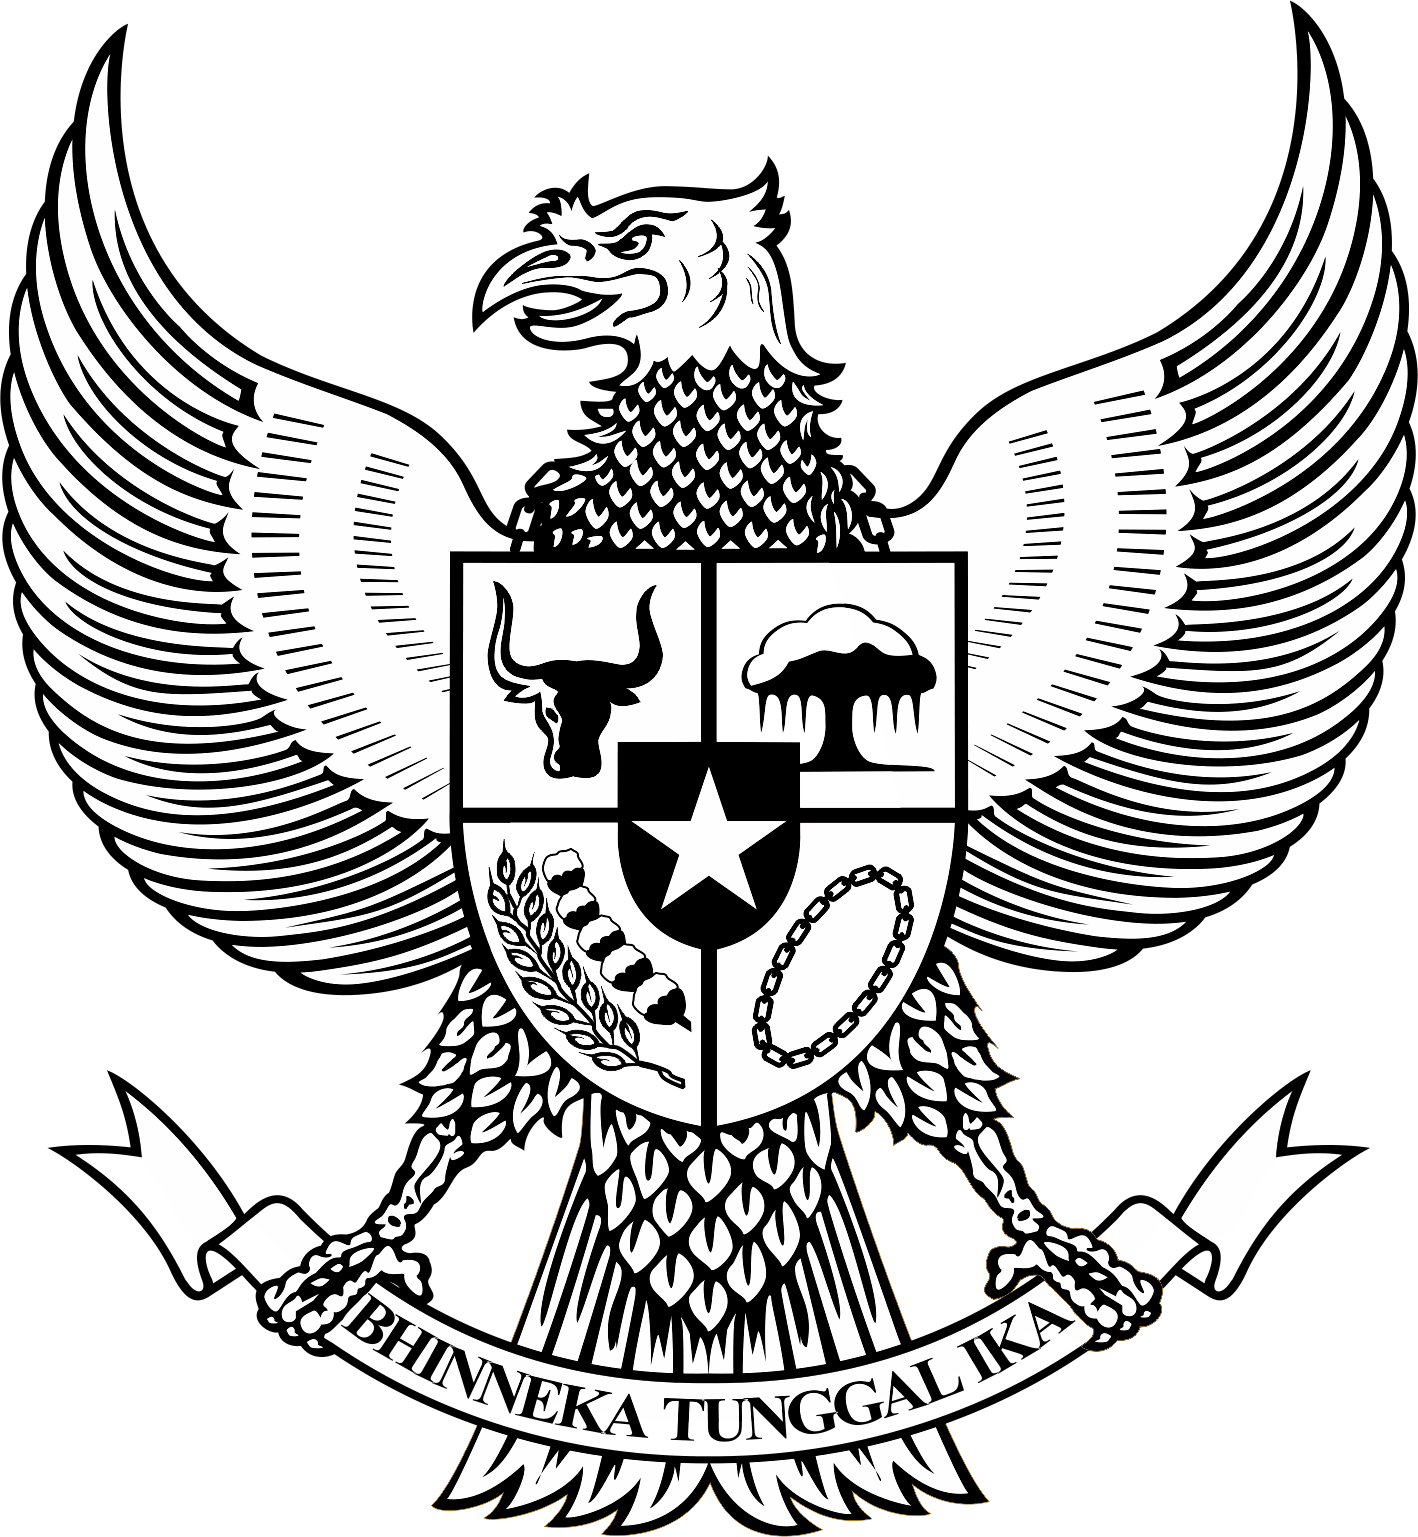 Logo Garuda Pancasila Bw Hitam Putih Background Black And White PNG  Transparent Background, Free Download #48971 - FreeIconsPNG